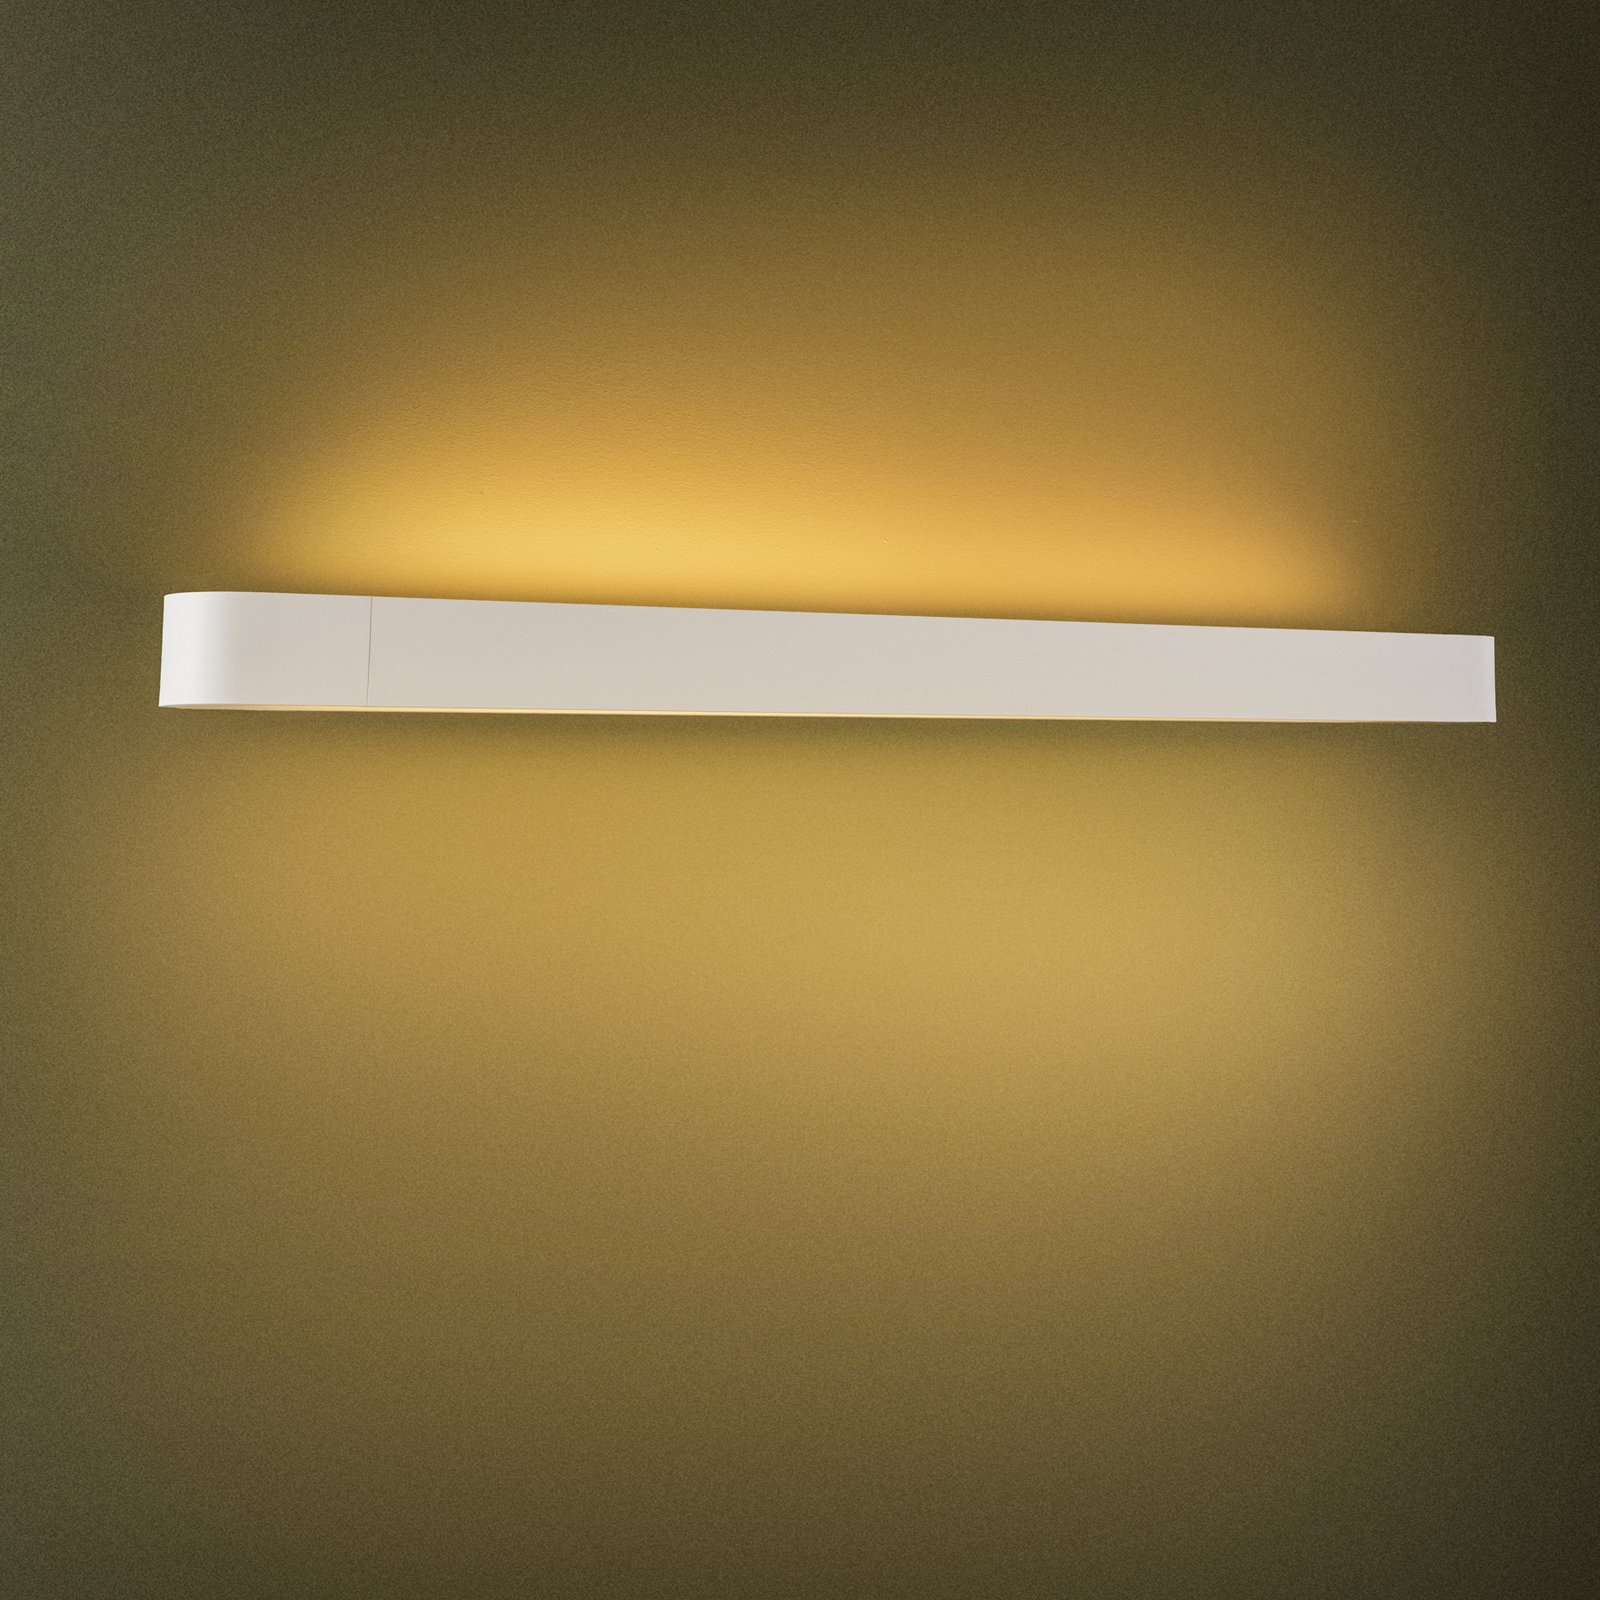 Zidna svjetiljka Soft, širina 90 cm, bijela, aluminij, G13